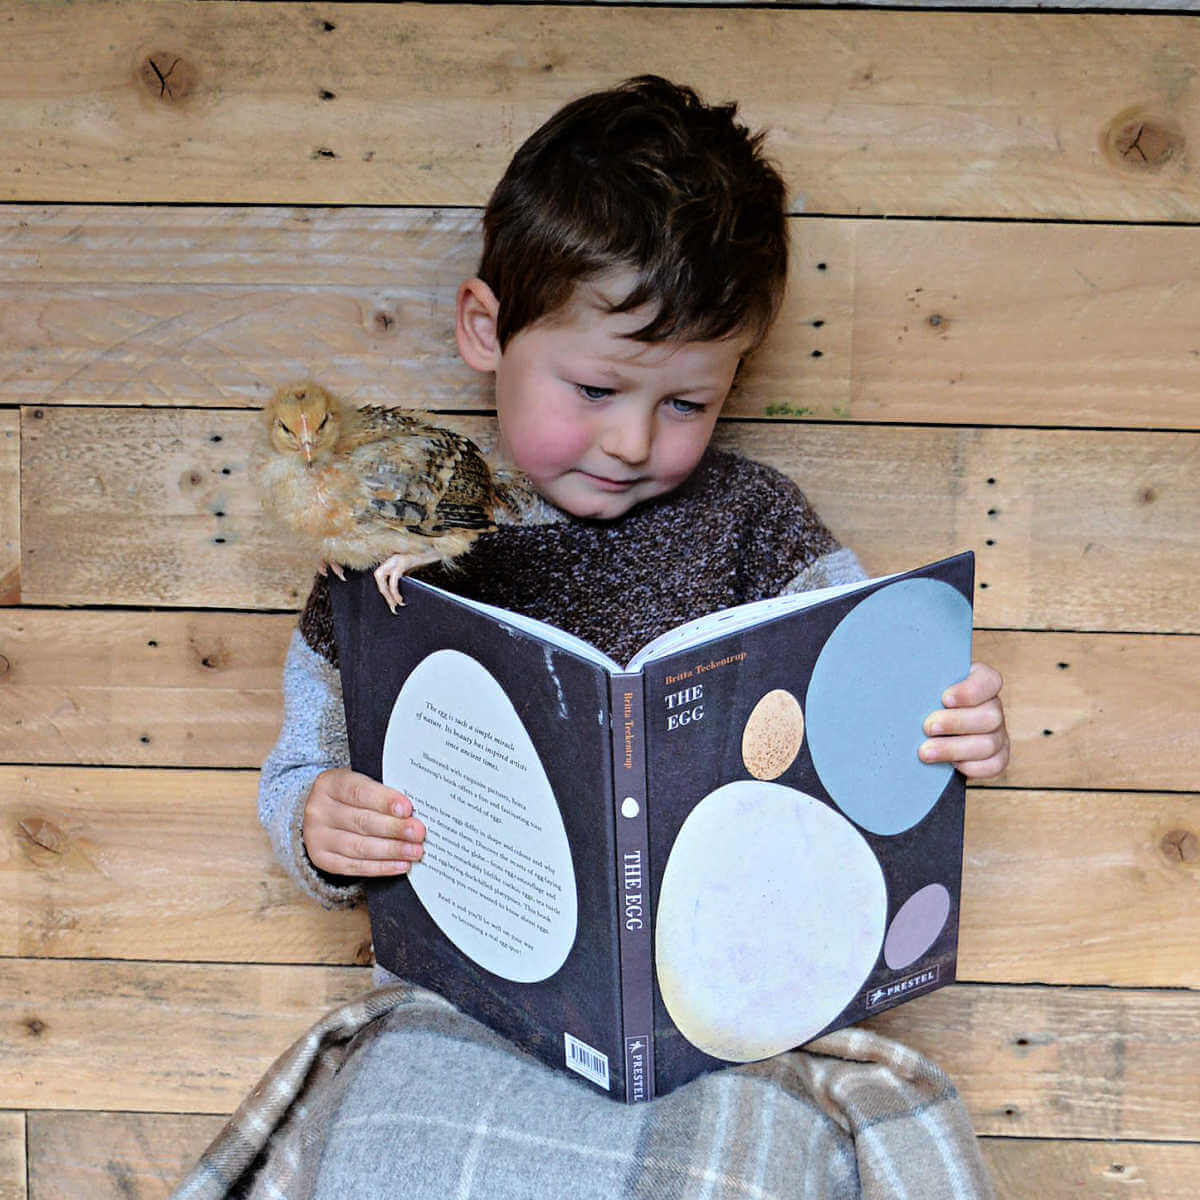 The egg children's book by britta teckentrup